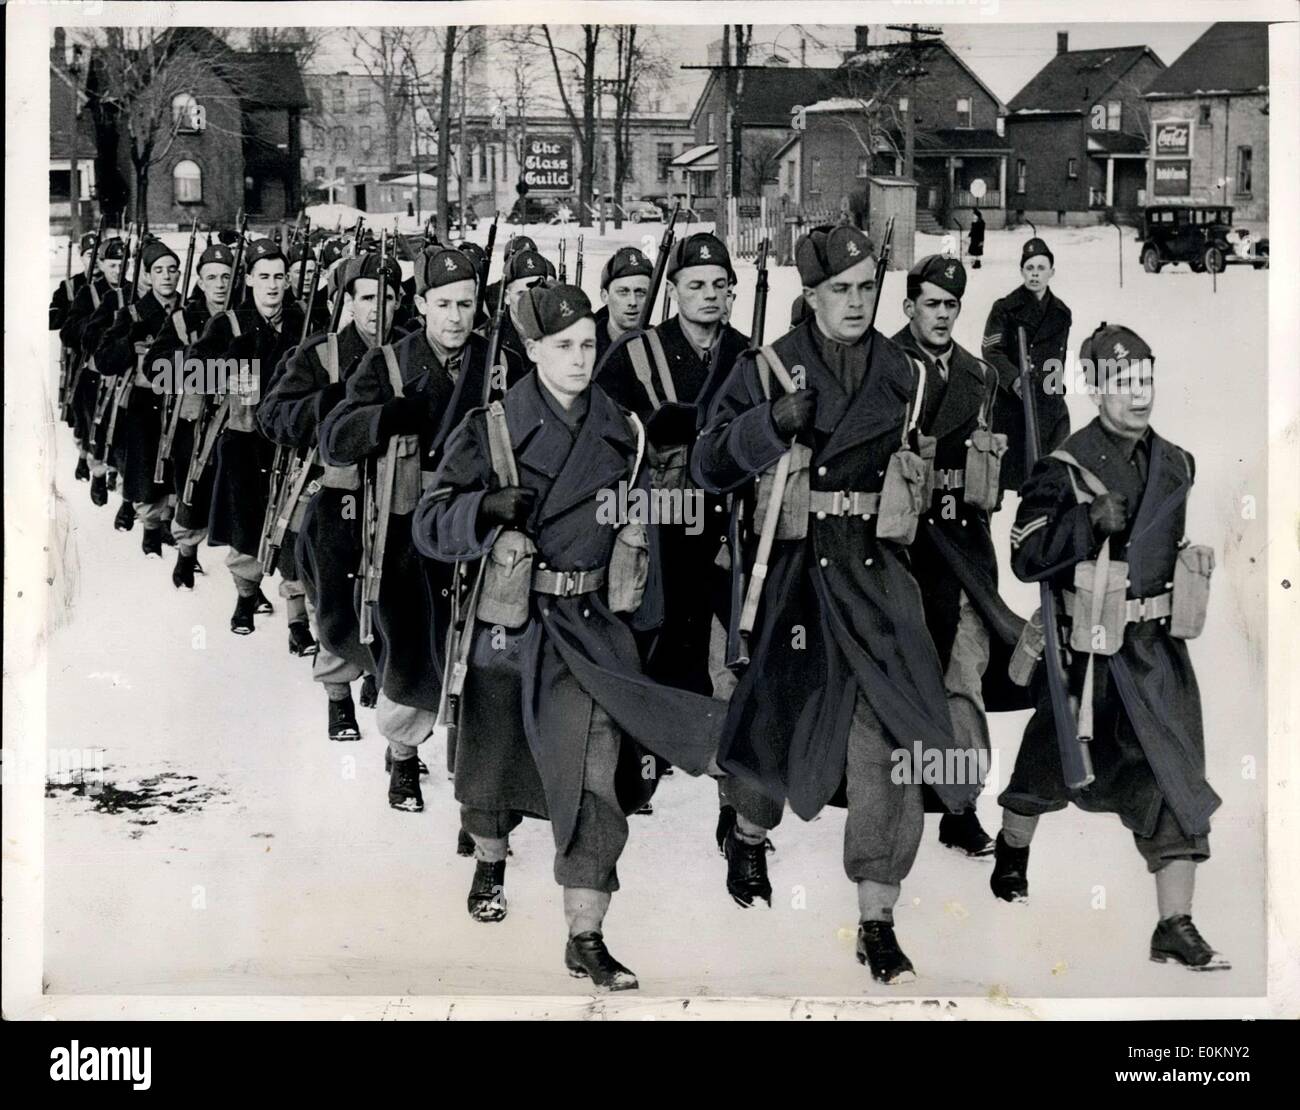 8. Februar 1941 - niederländischen Truppen jetzt Ausbildung in Kanada: Soldaten, Loyal zu der Emigre niederländische Exilregierung in London. Bohren im Hof einer alten Fabrik hier für künftige Übersee Service. Kanadische Armeeoffiziere sind als Ausbilder tätig. Stockfoto